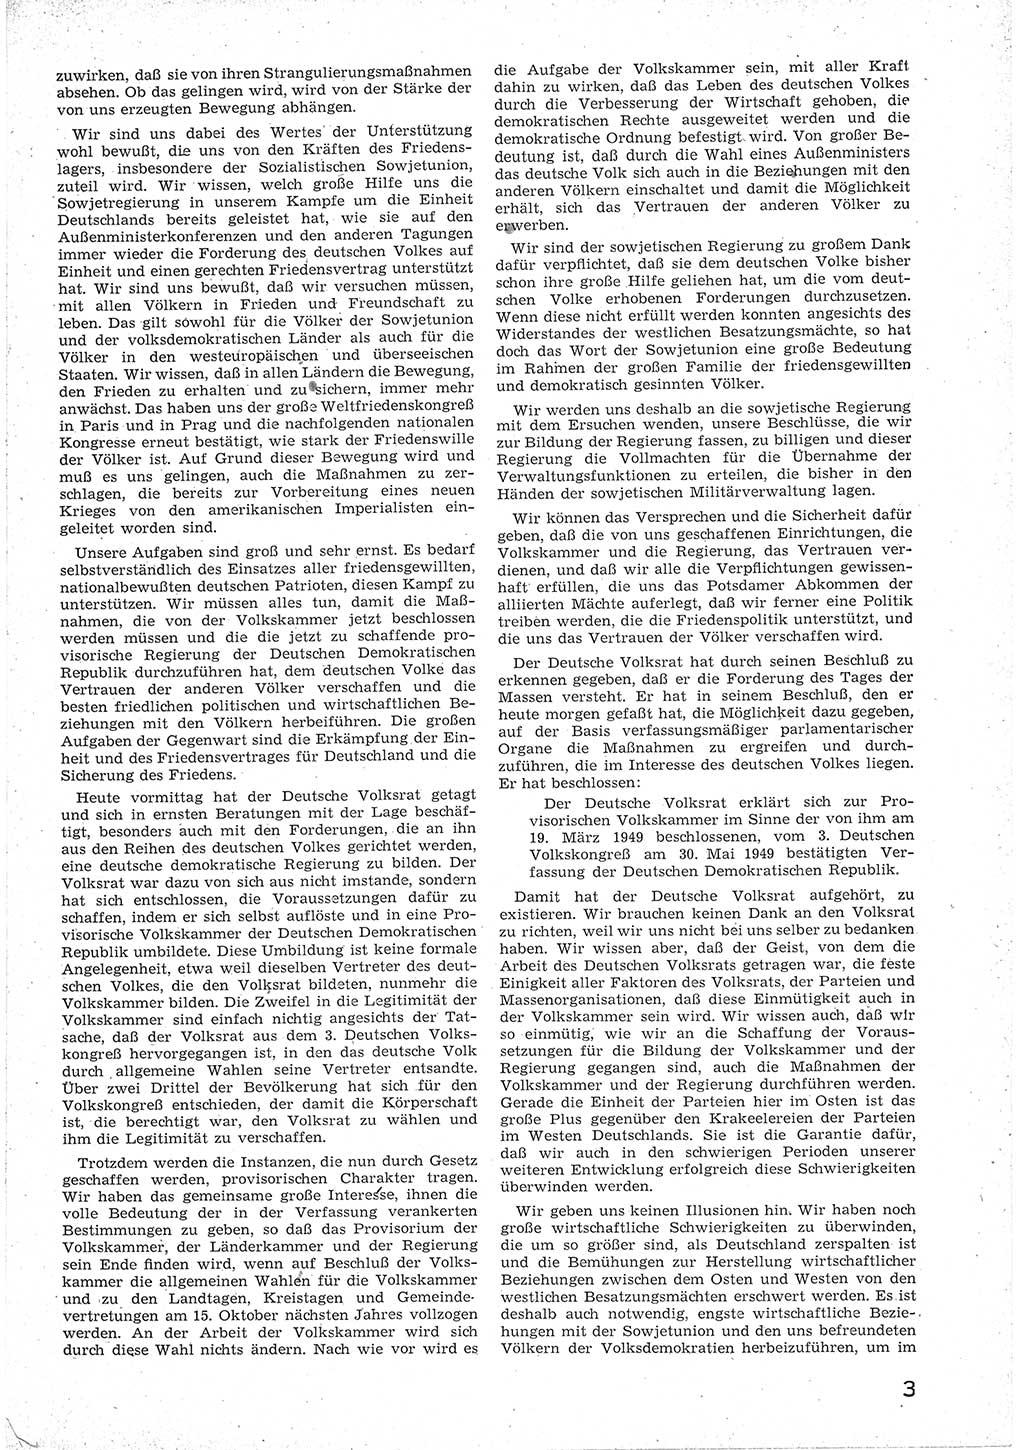 Provisorische Volkskammer (VK) der Deutschen Demokratischen Republik (DDR) 1949-1950, Dokument 15 (Prov. VK DDR 1949-1950, Dok. 15)